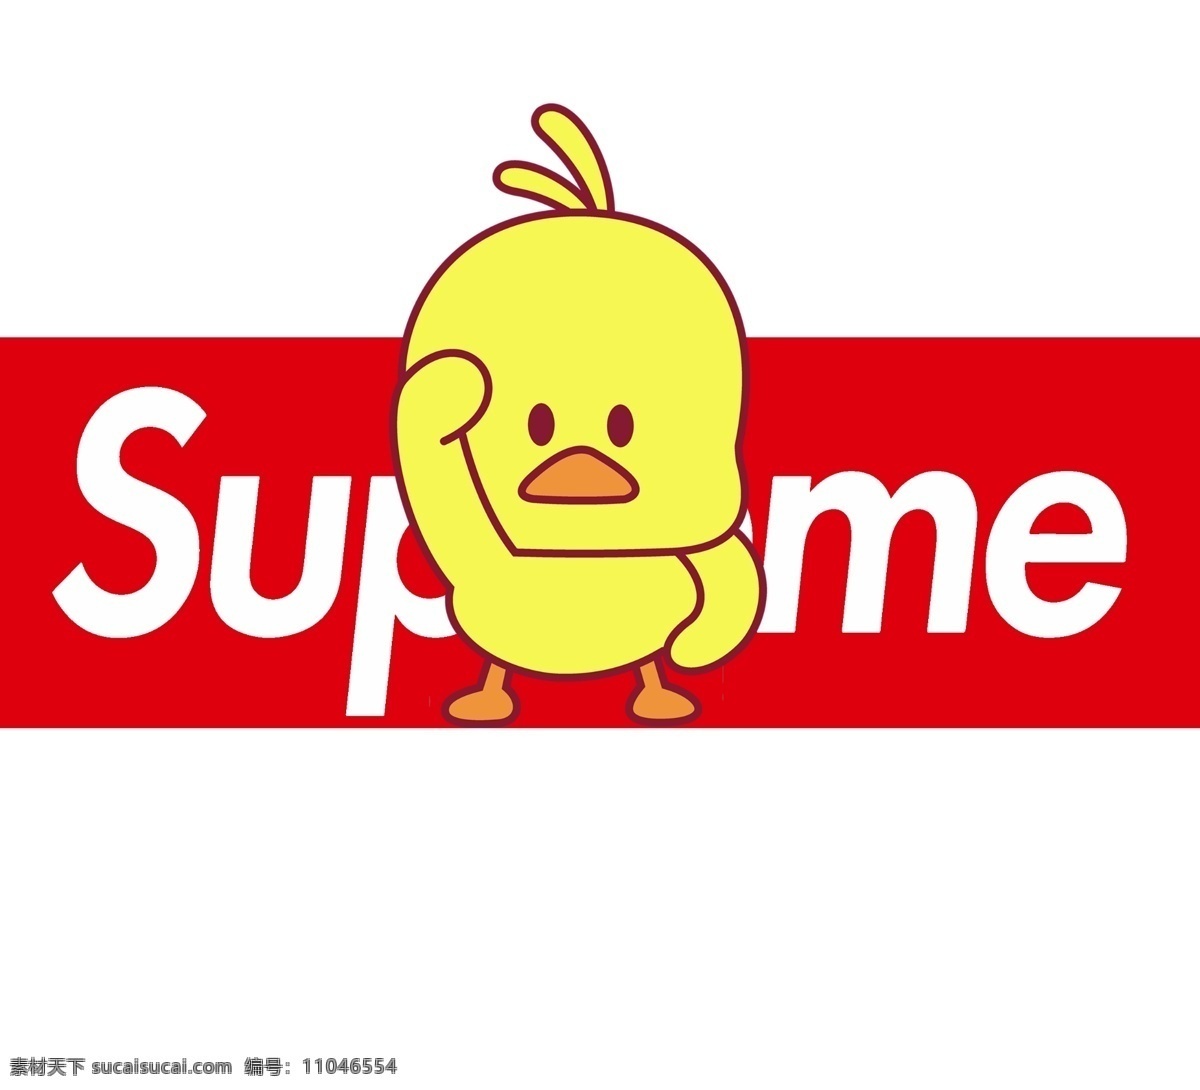 小黄鸭 supreme 潮牌 可爱 卡通 动漫动画 动漫人物